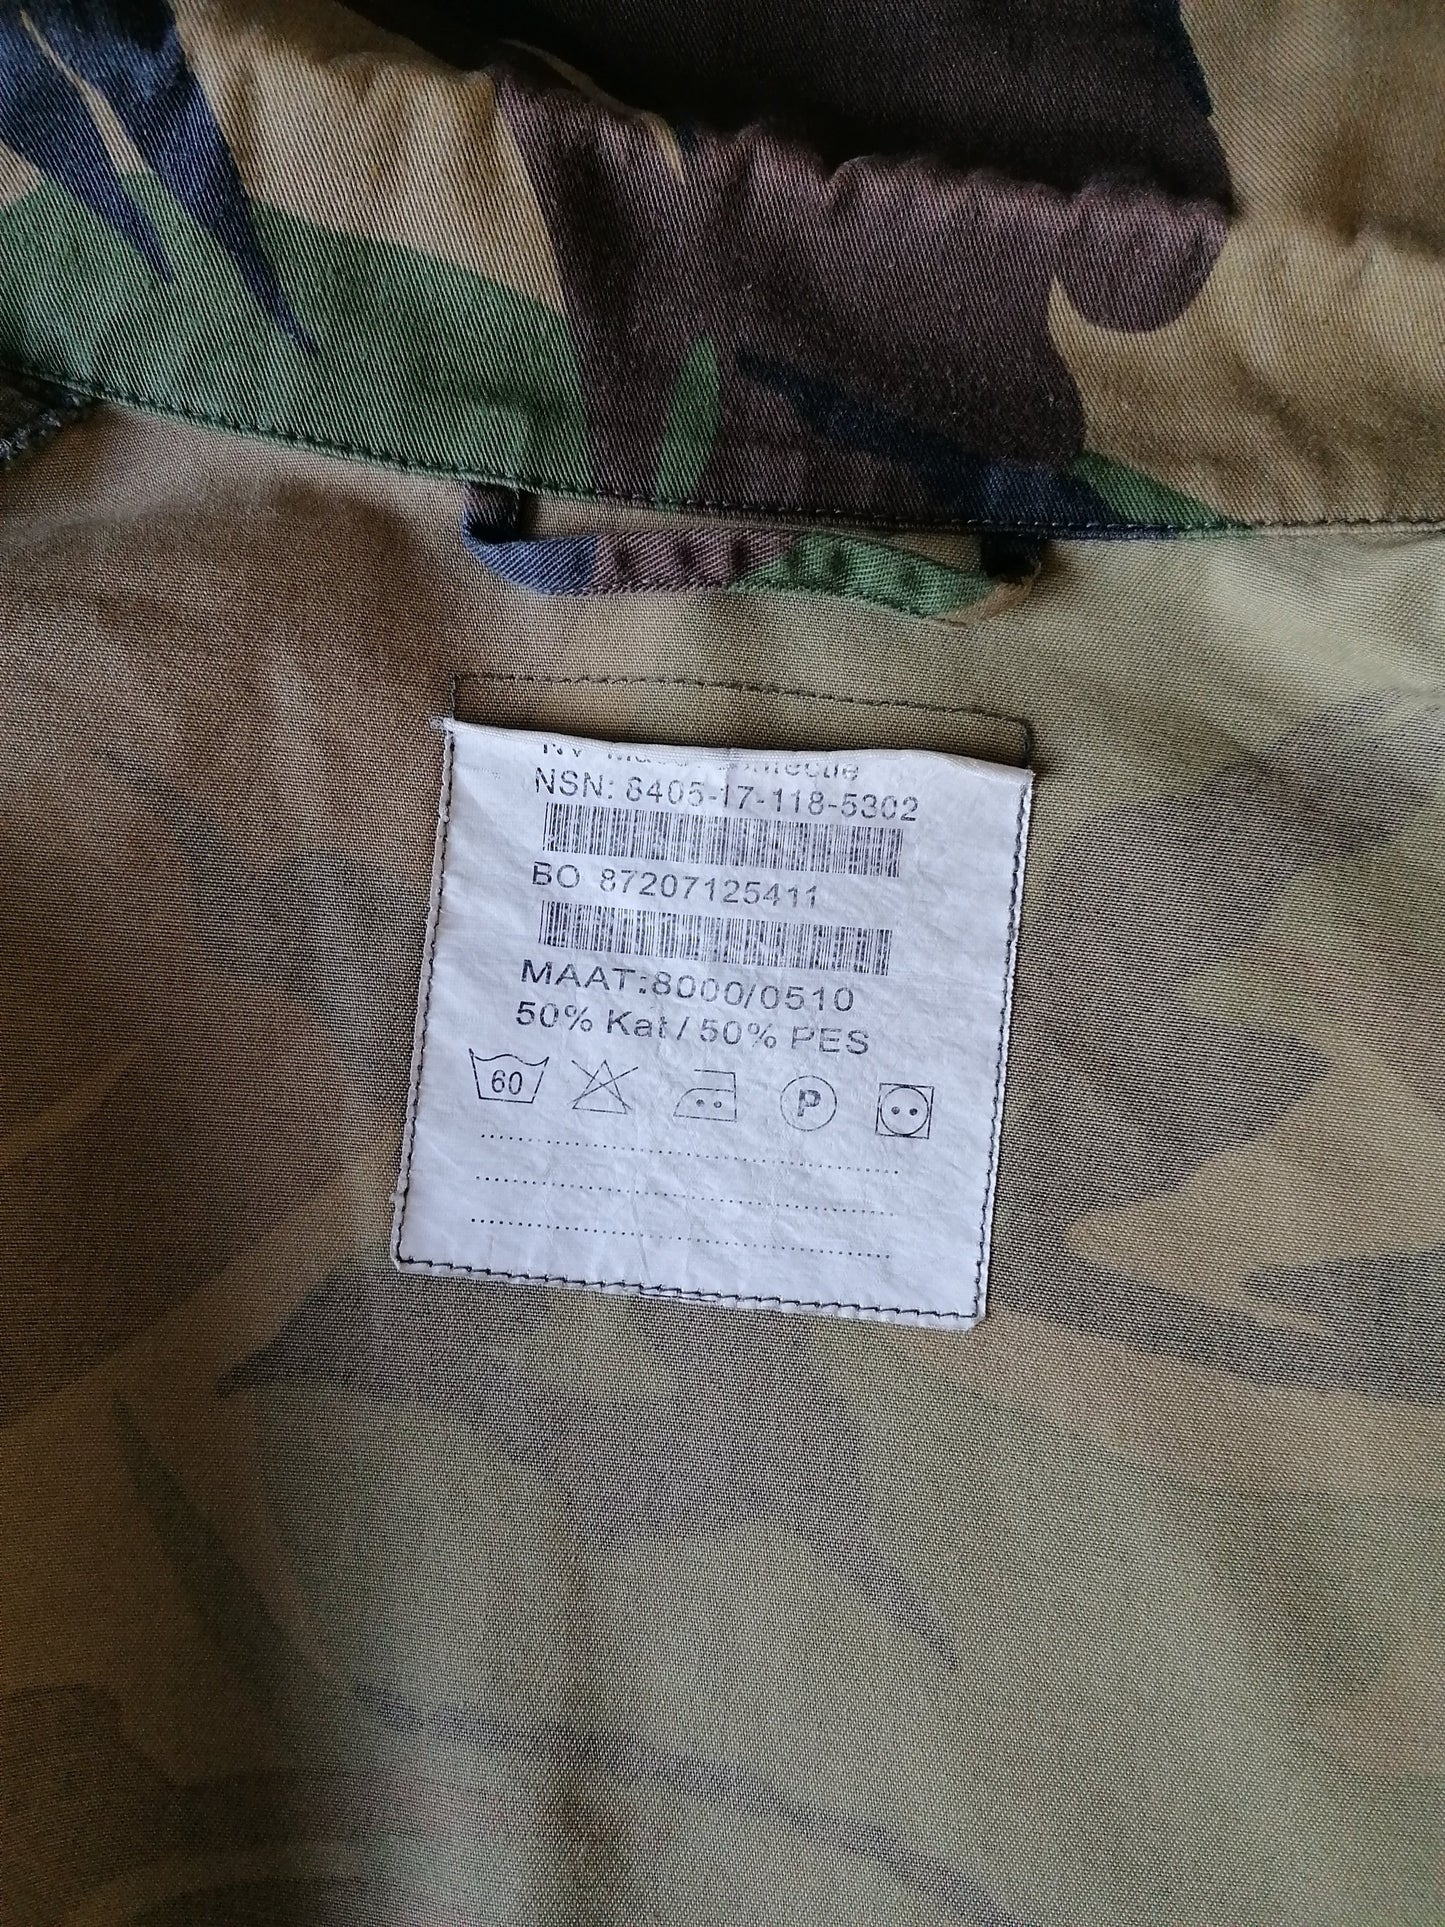 Camisa del ejército / ejército de la vendimia. Impresión de camuflaje con tachuelas de prensa. Tamaño XL. Original.